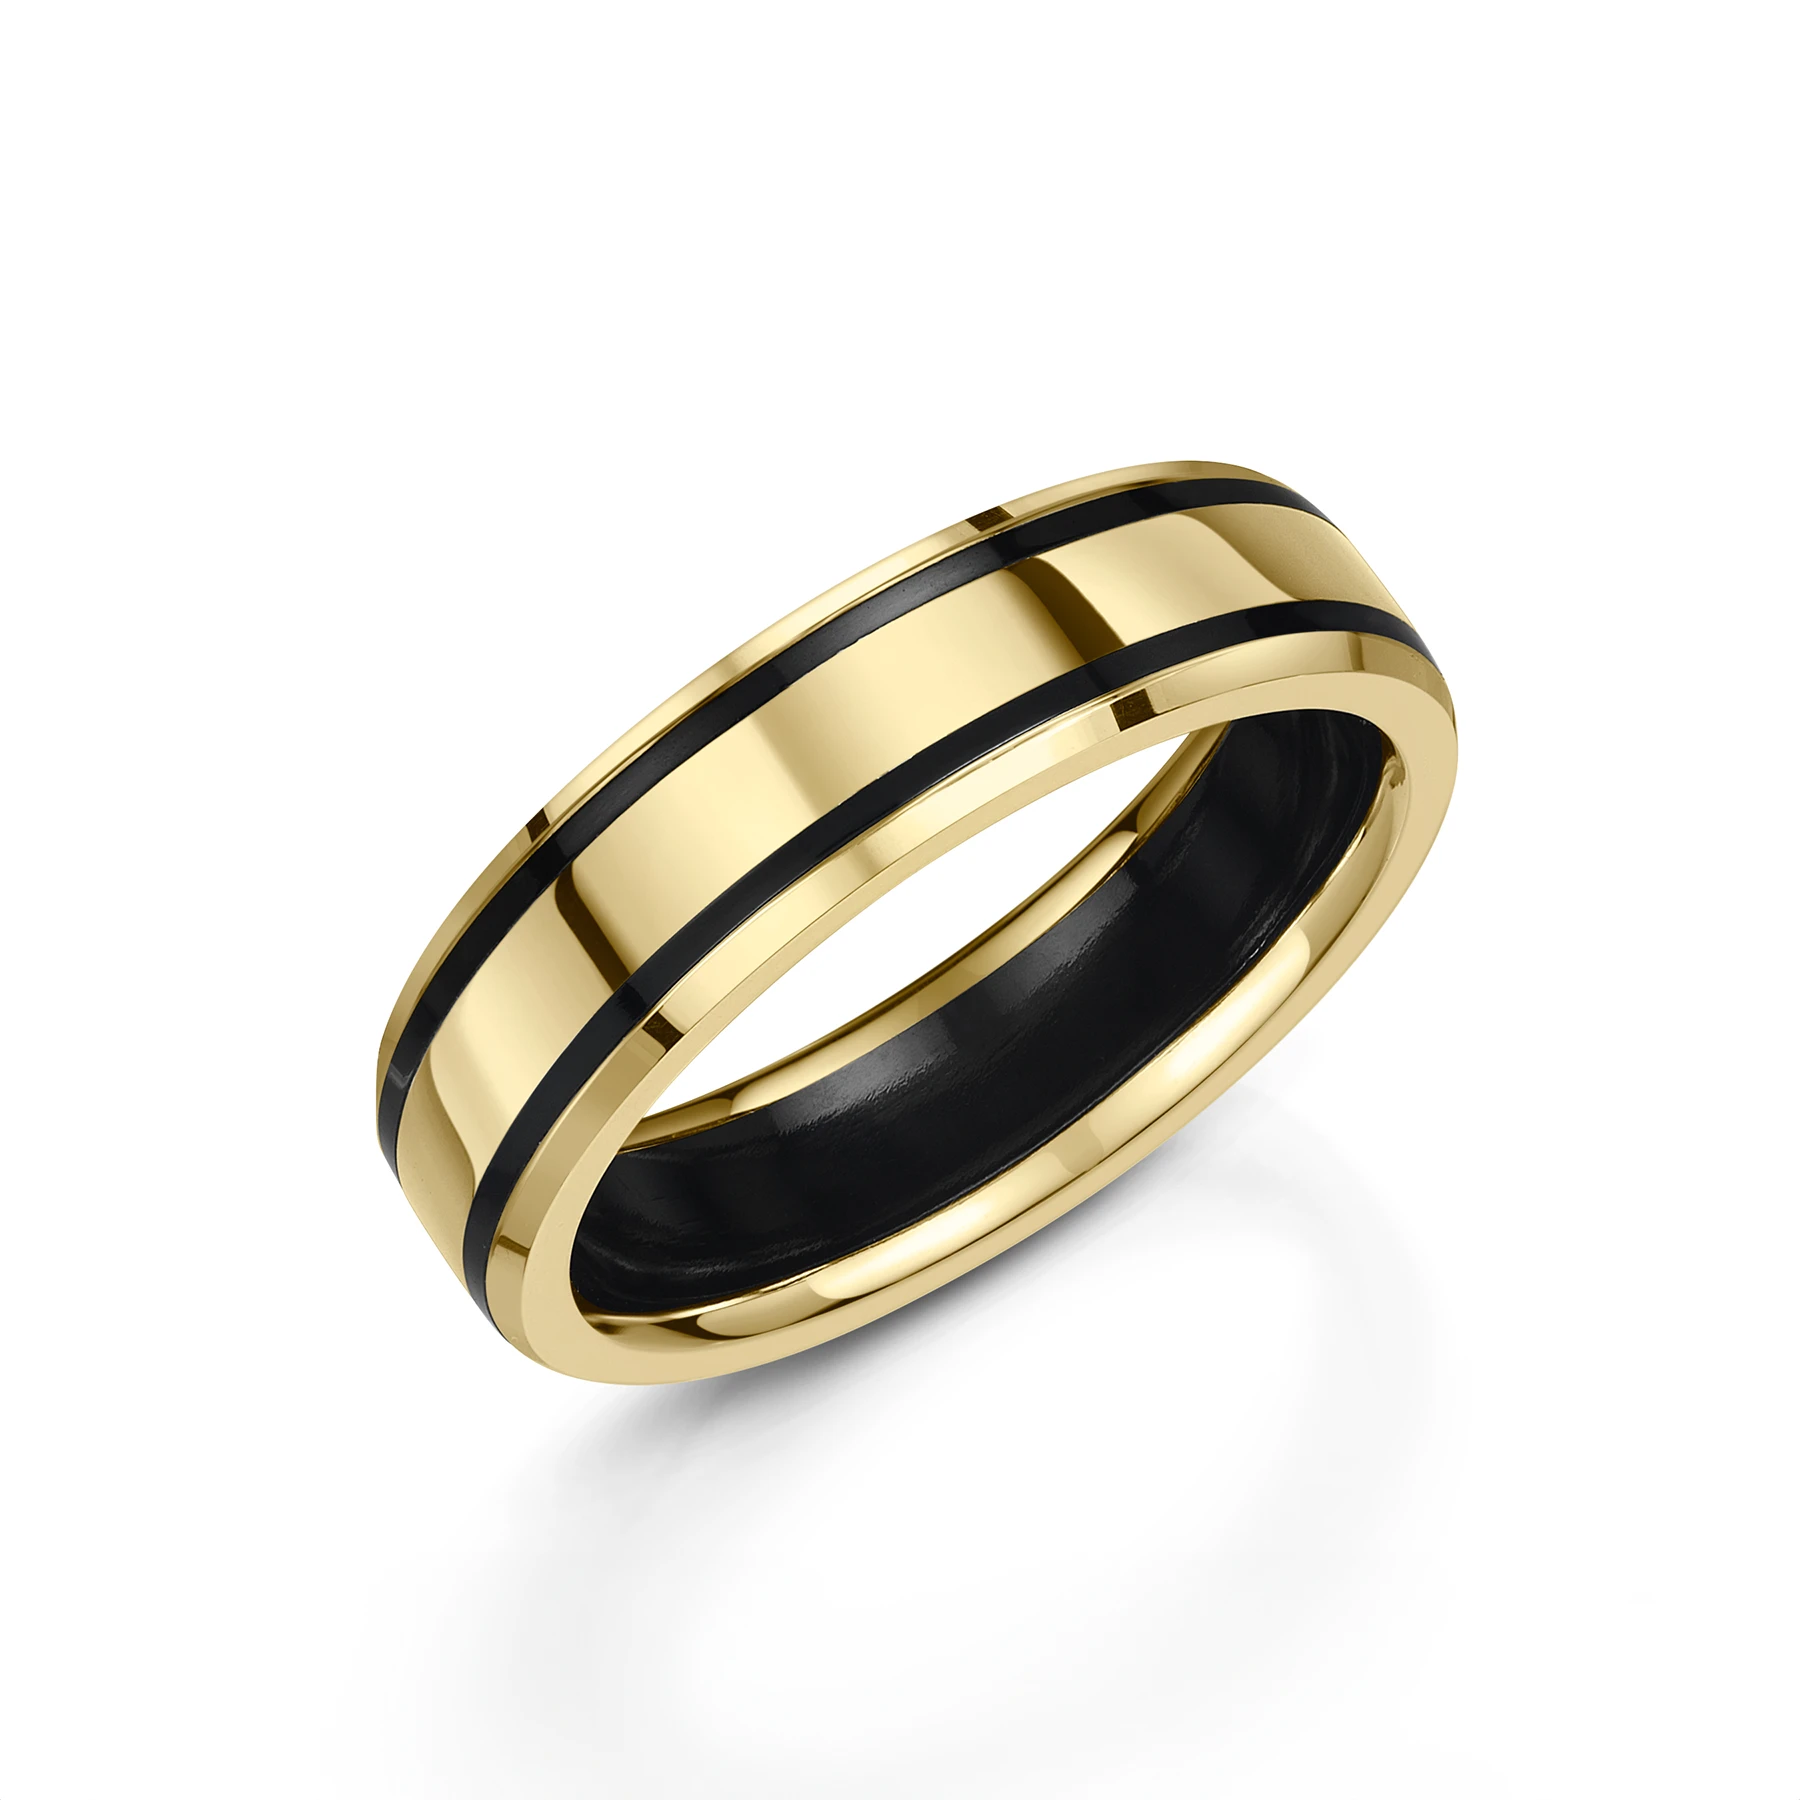 Yellow Gold & Black Zirconium Wedding Ring